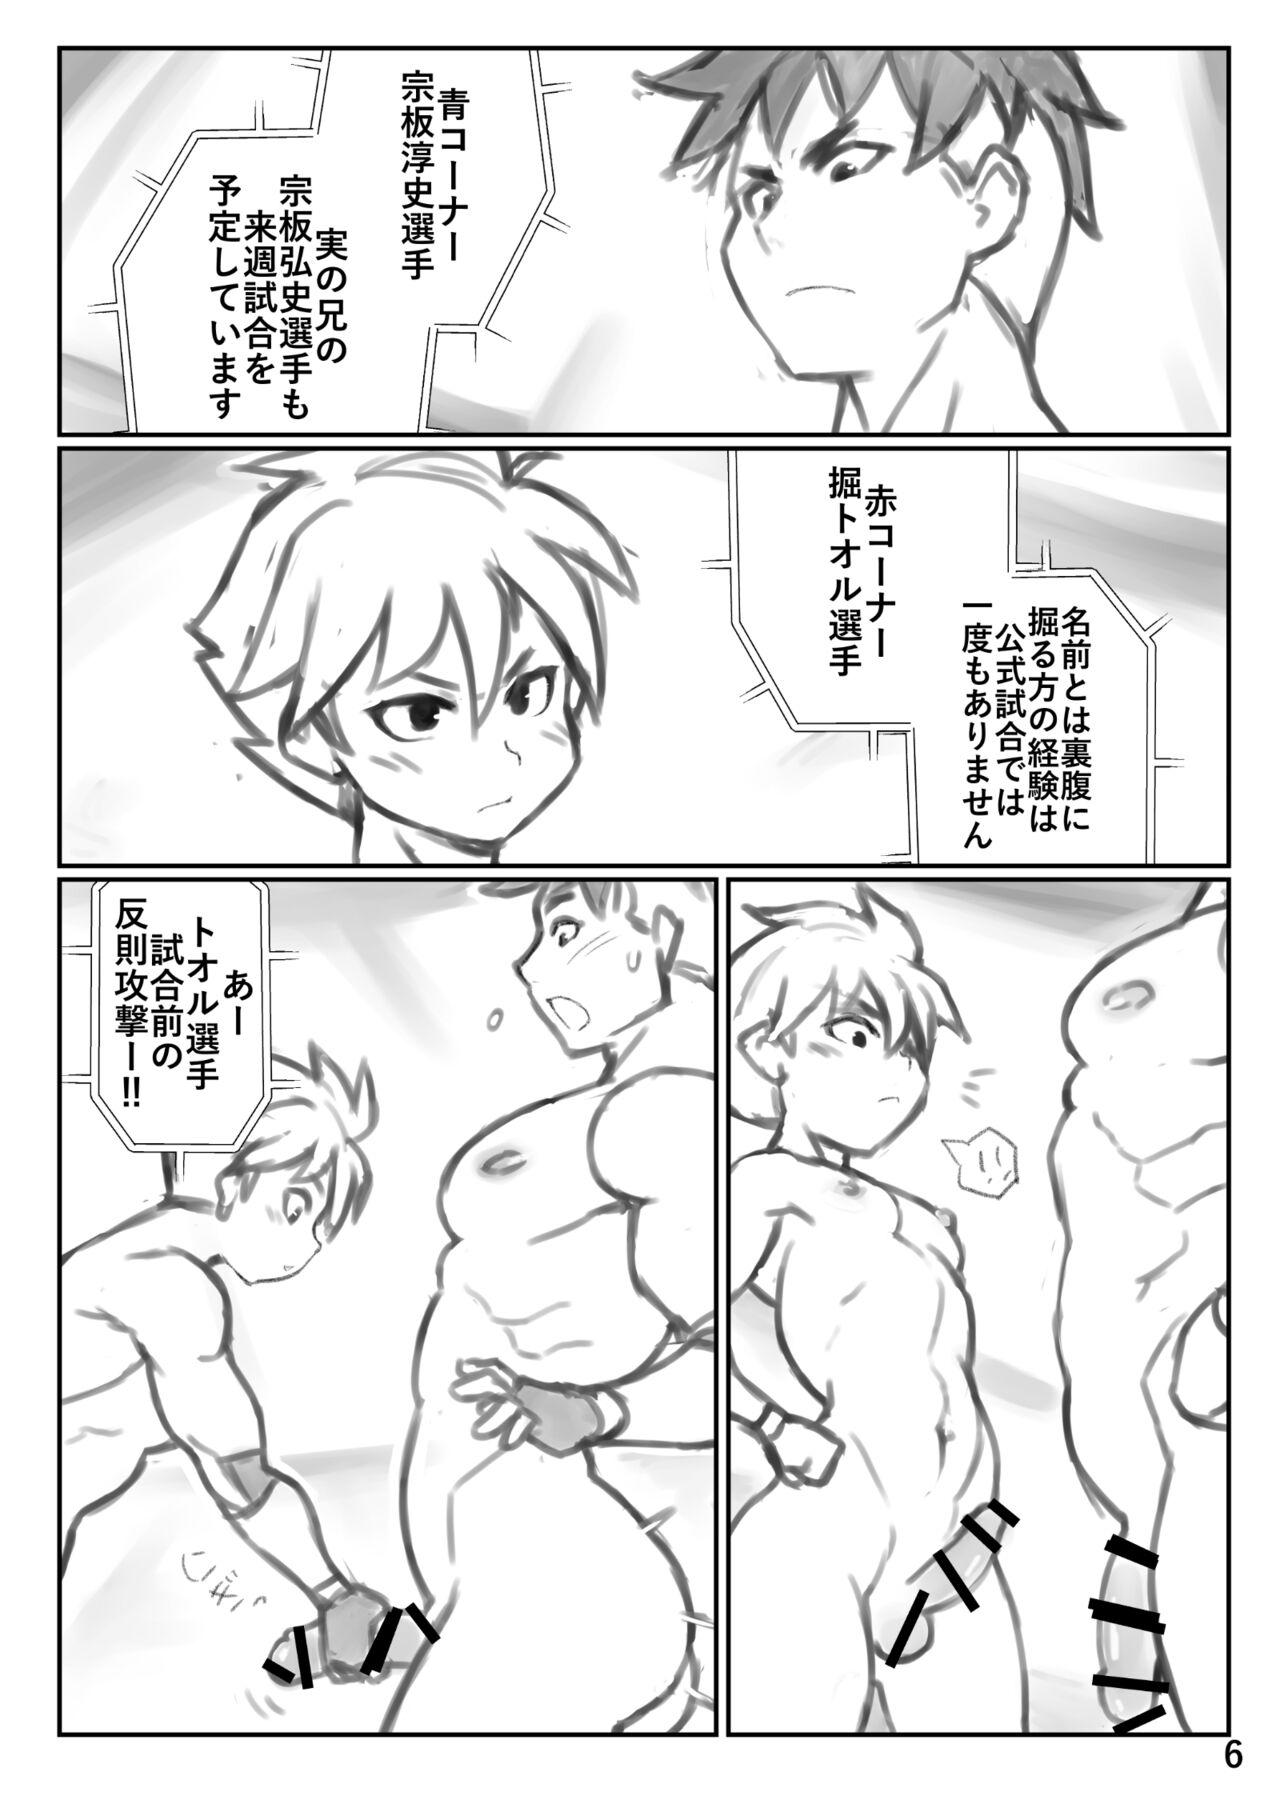 Spreading Puroresu ♂ ni nattenai nanika - Original Tinder - Page 6